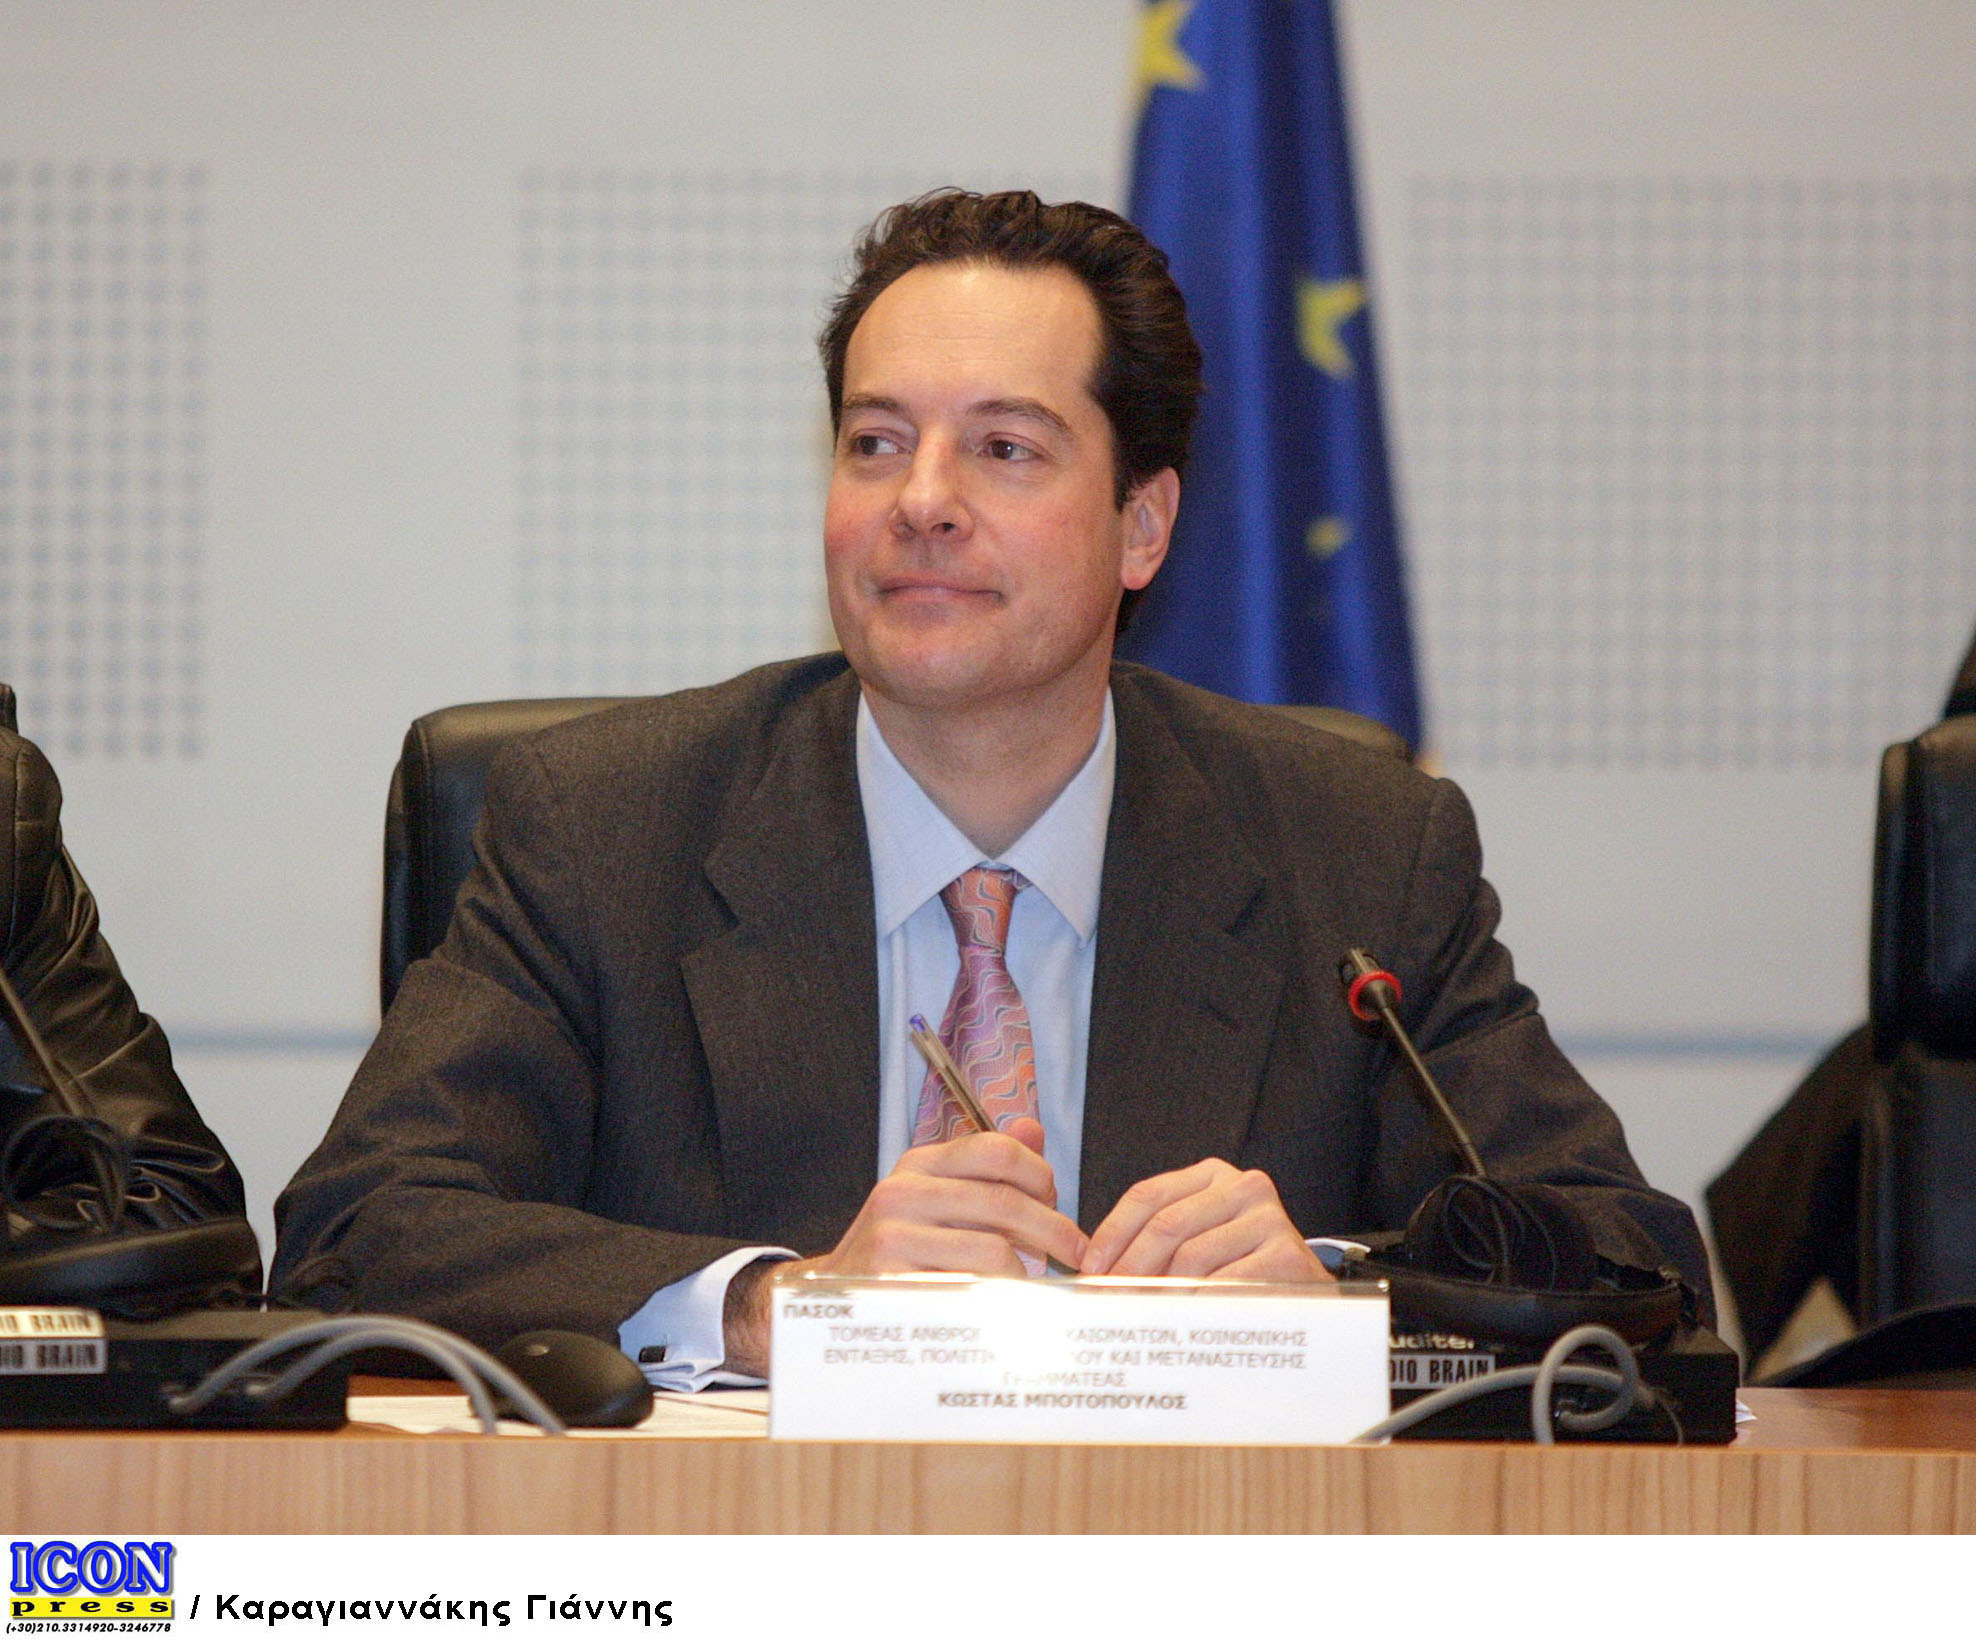 Ο Κ. Μποτόπουλος στο Eurofi Financial Forum 2014 του Μιλάνου